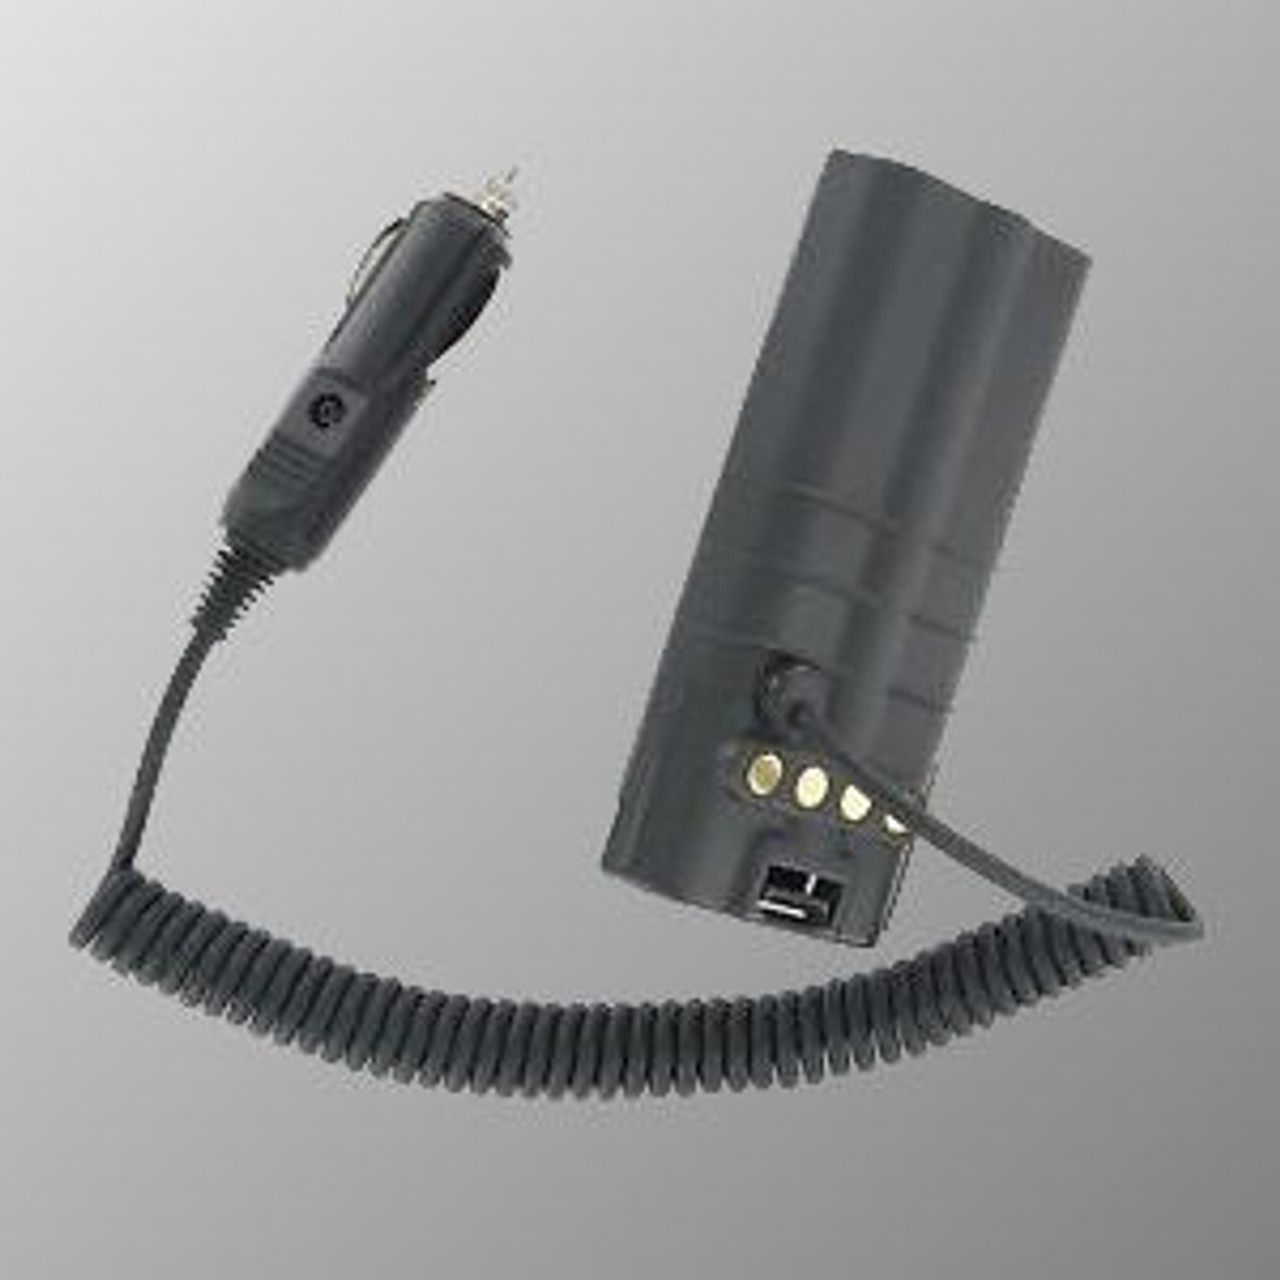 Harris P7130 Battery Eliminator - 12VDC Cig Plug